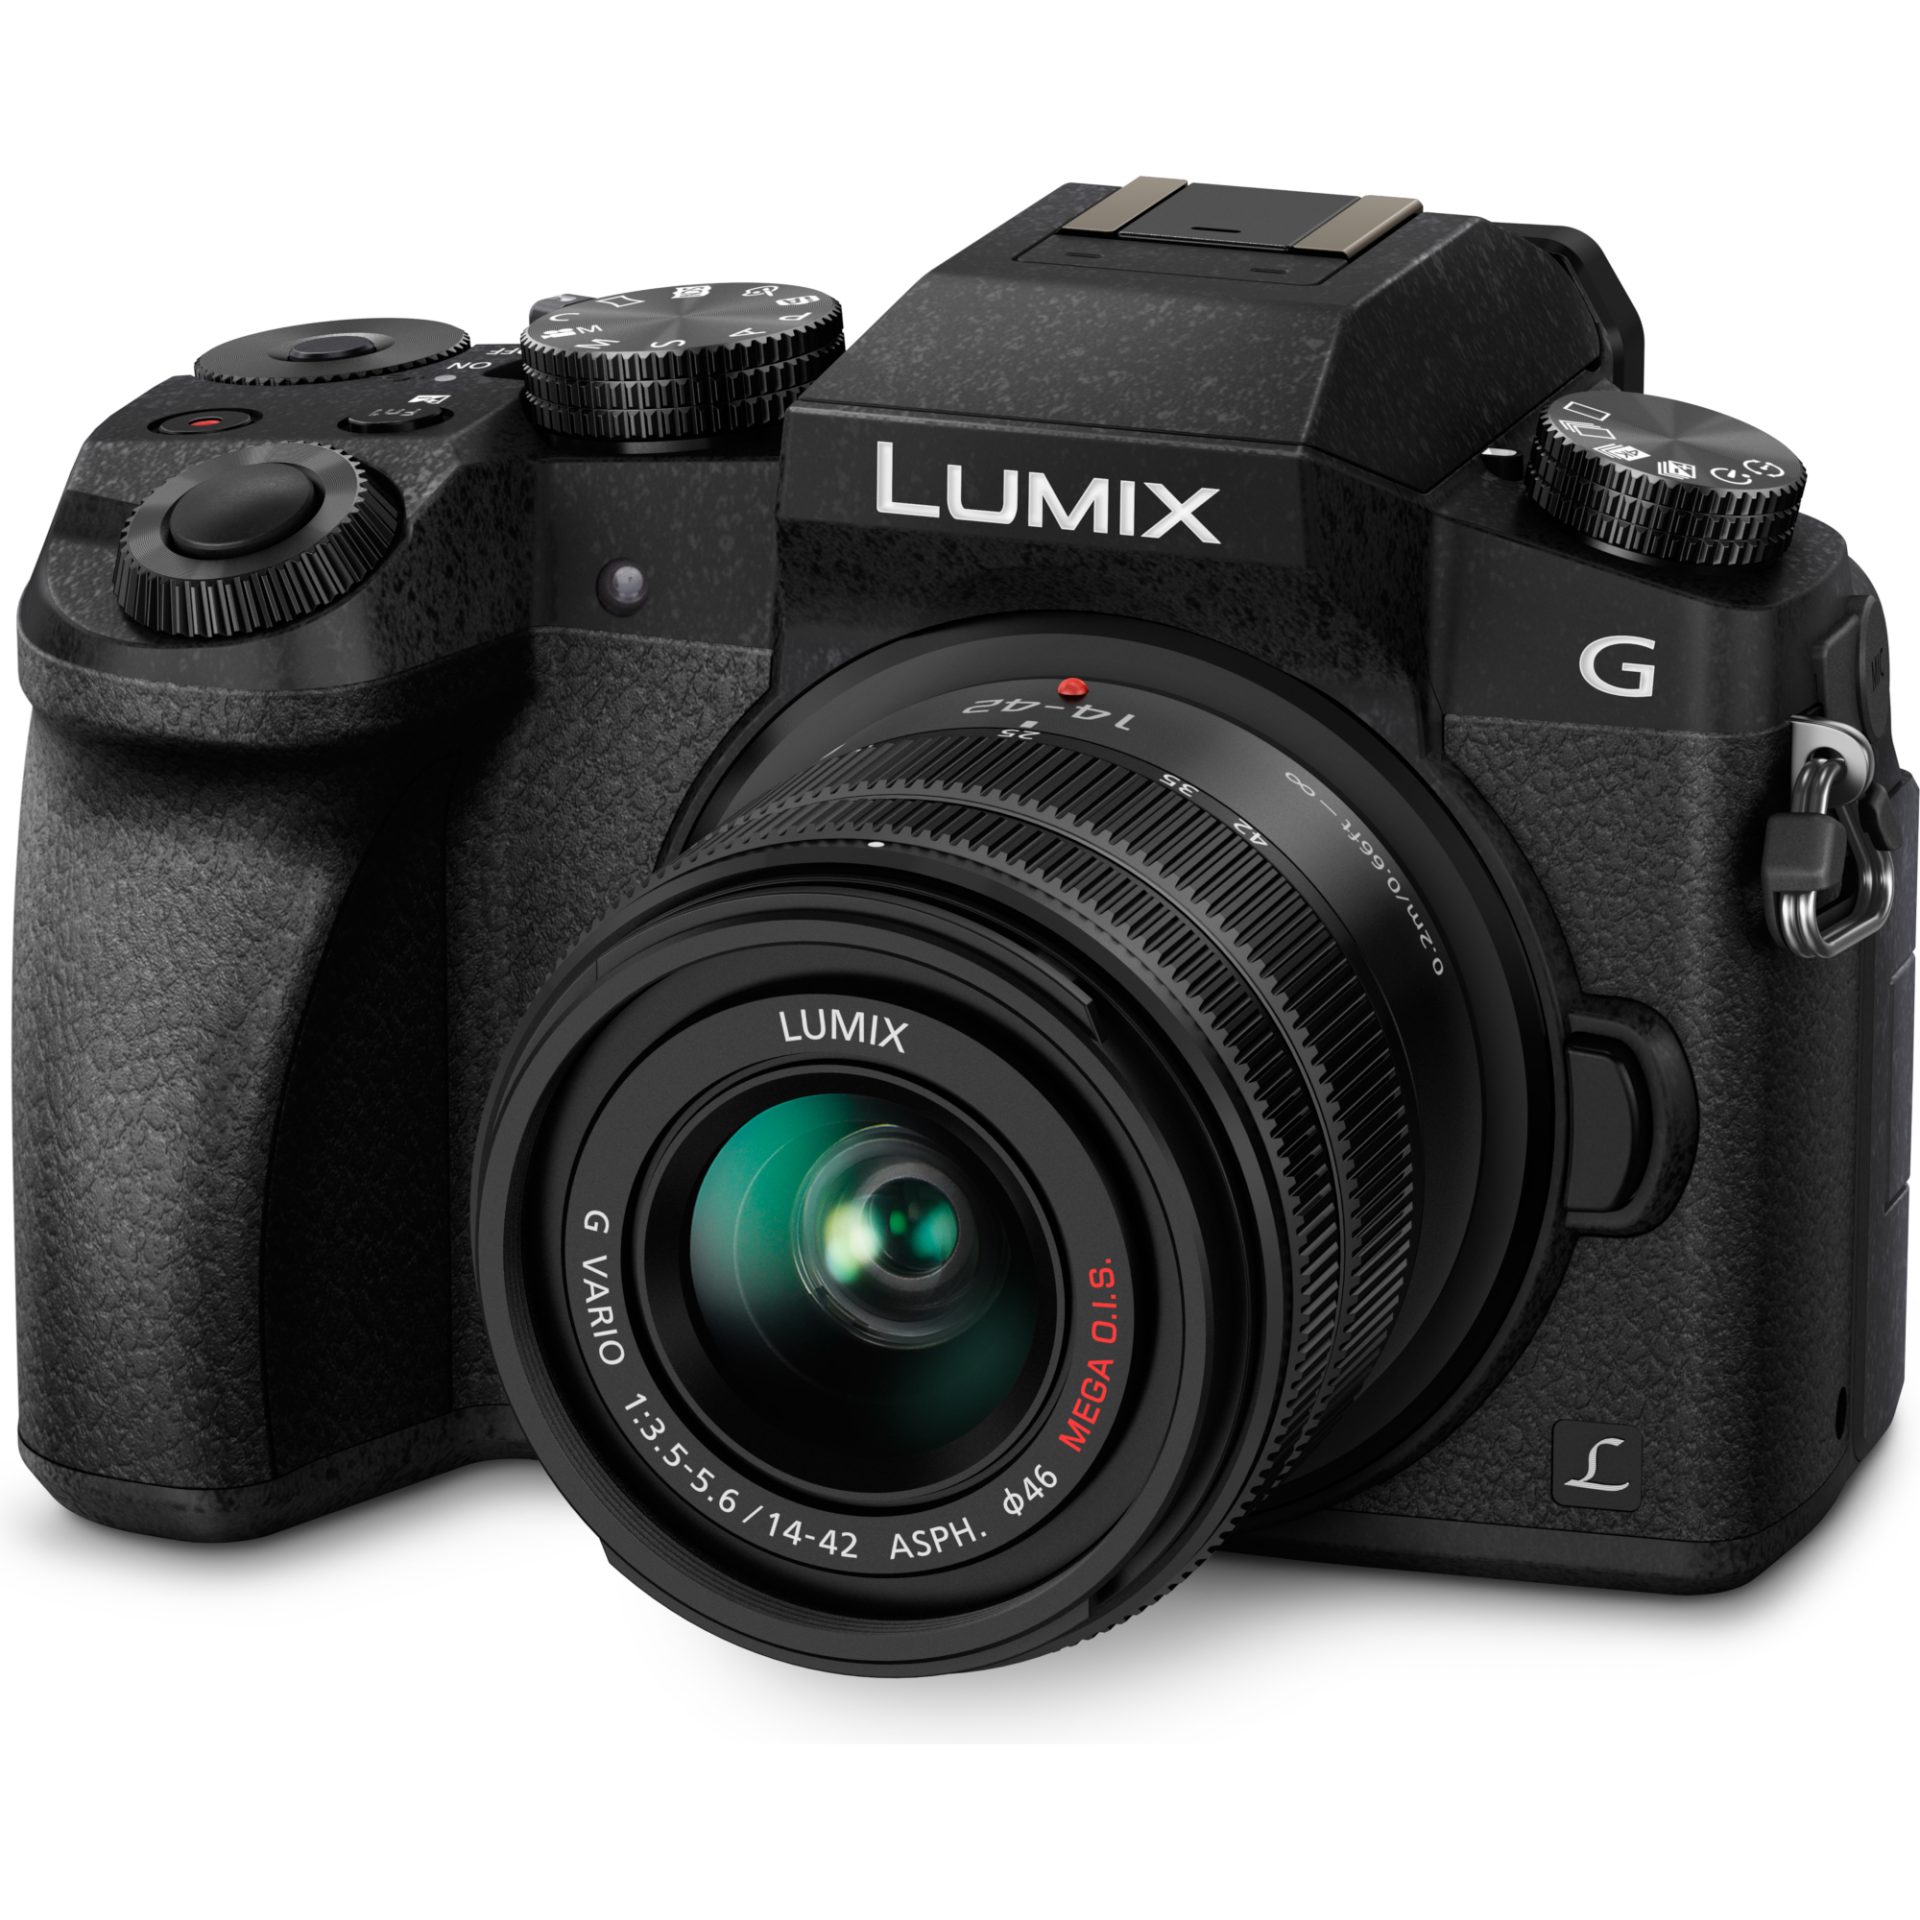 Panasonic DMC-G7K Lumix bezzrcadlový digitální fotoaparát + H-FS1442A 14-42mm, F3.5-5.6 (Live MOS 16MP, 4K, Post Focus, autofokus DFD, OLED LVF), čern